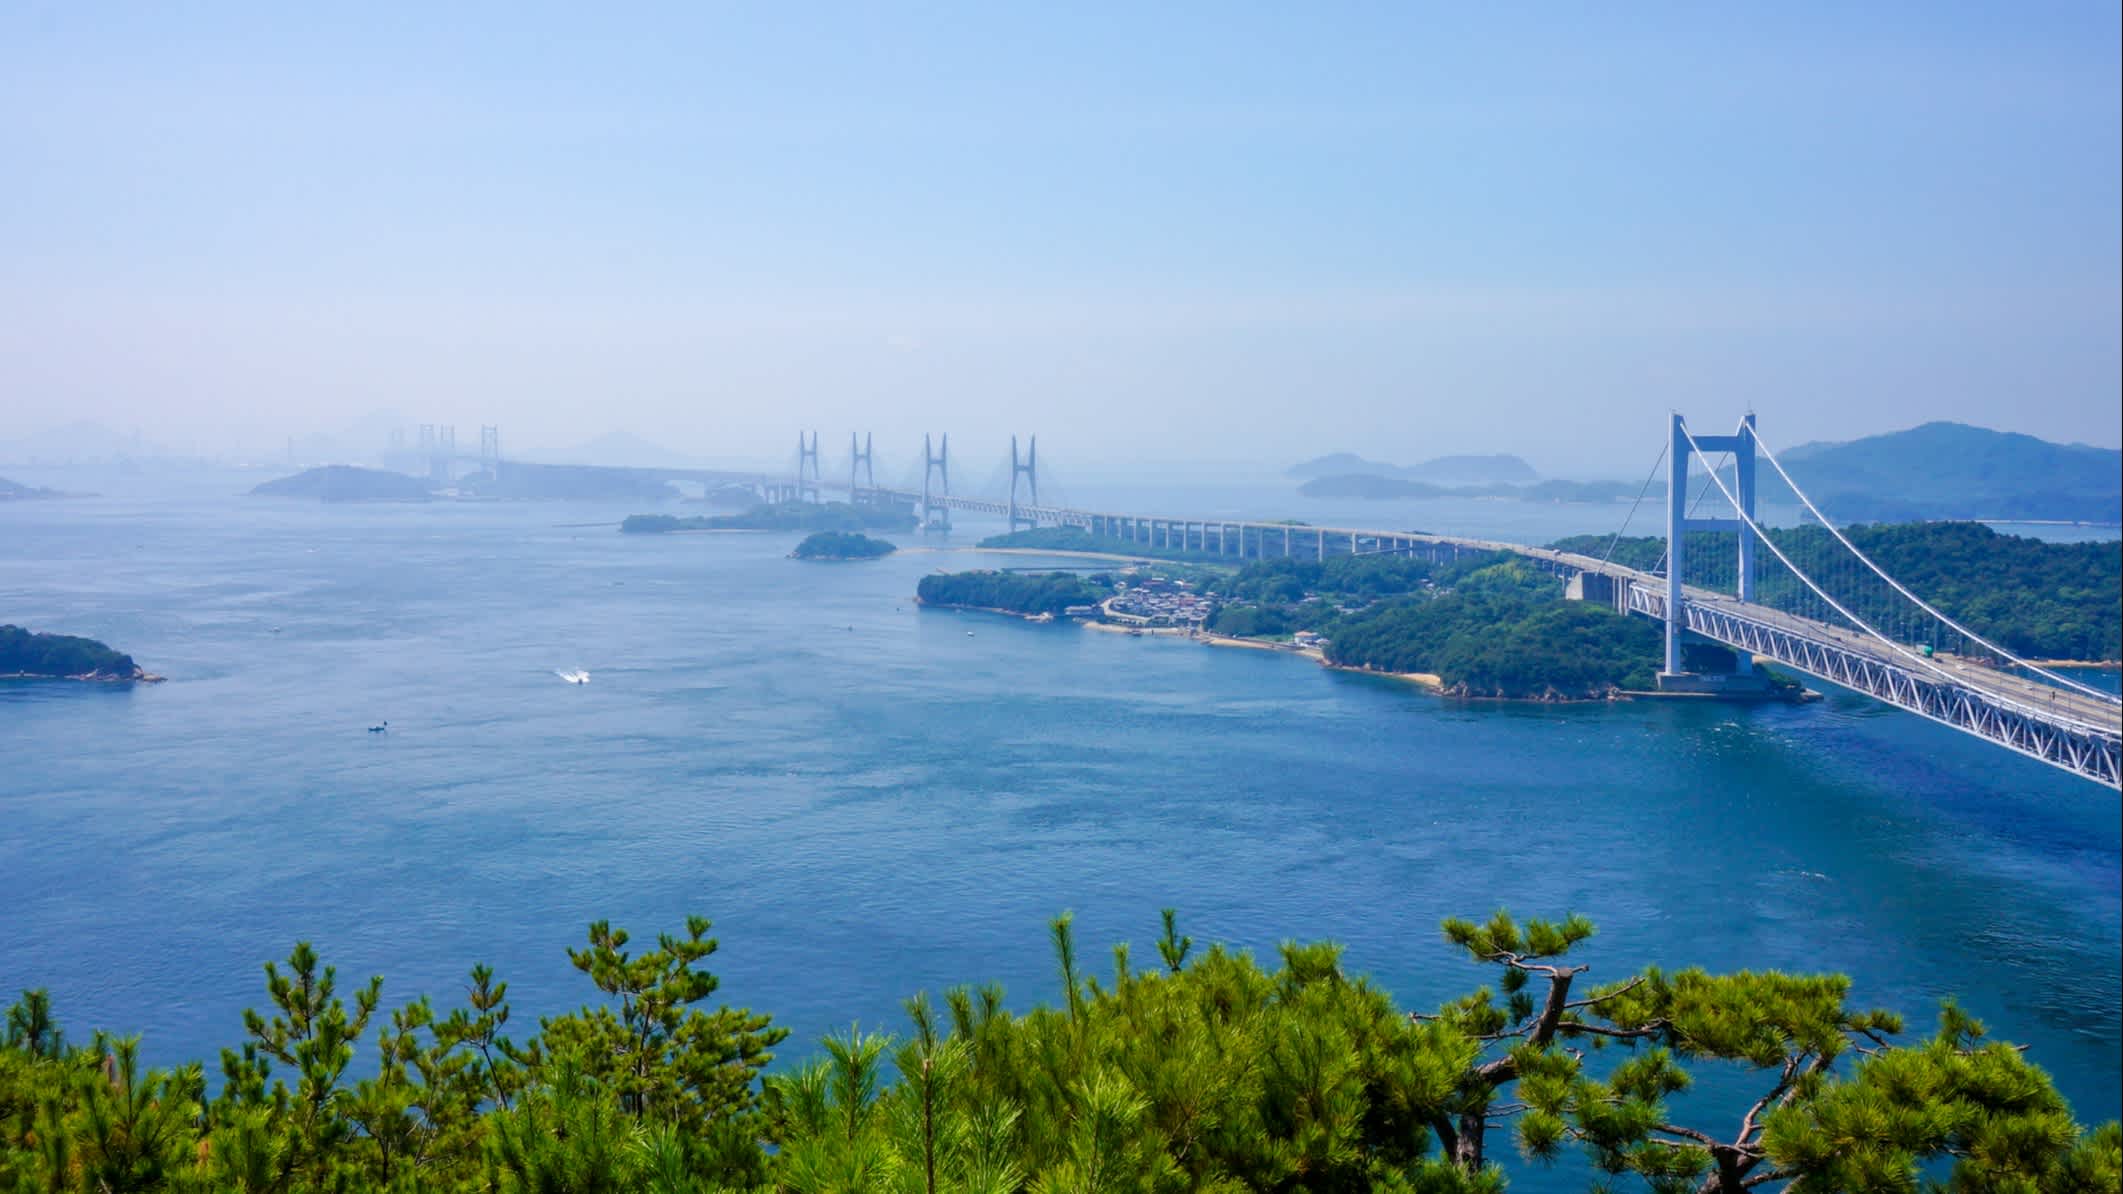 Ein Panoramablick auf die Seto-Brücke und Inseln in der Seto-Inlandsee, Japan. 

